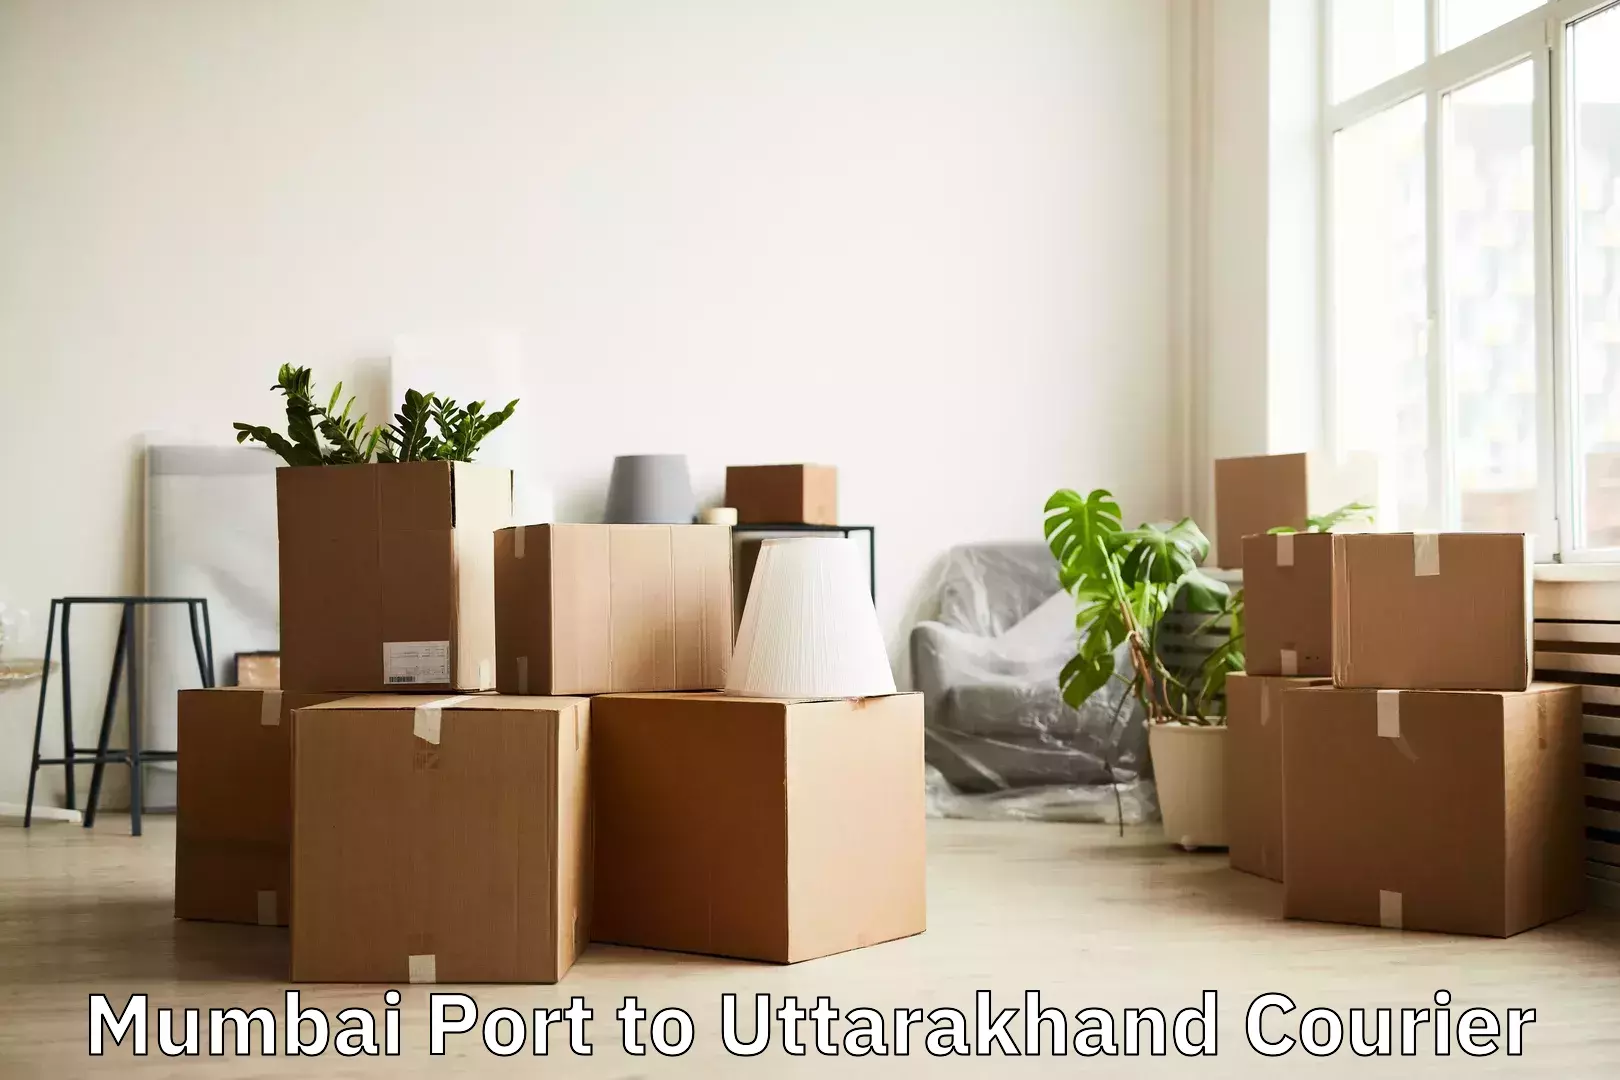 Urban luggage shipping Mumbai Port to Uttarakhand